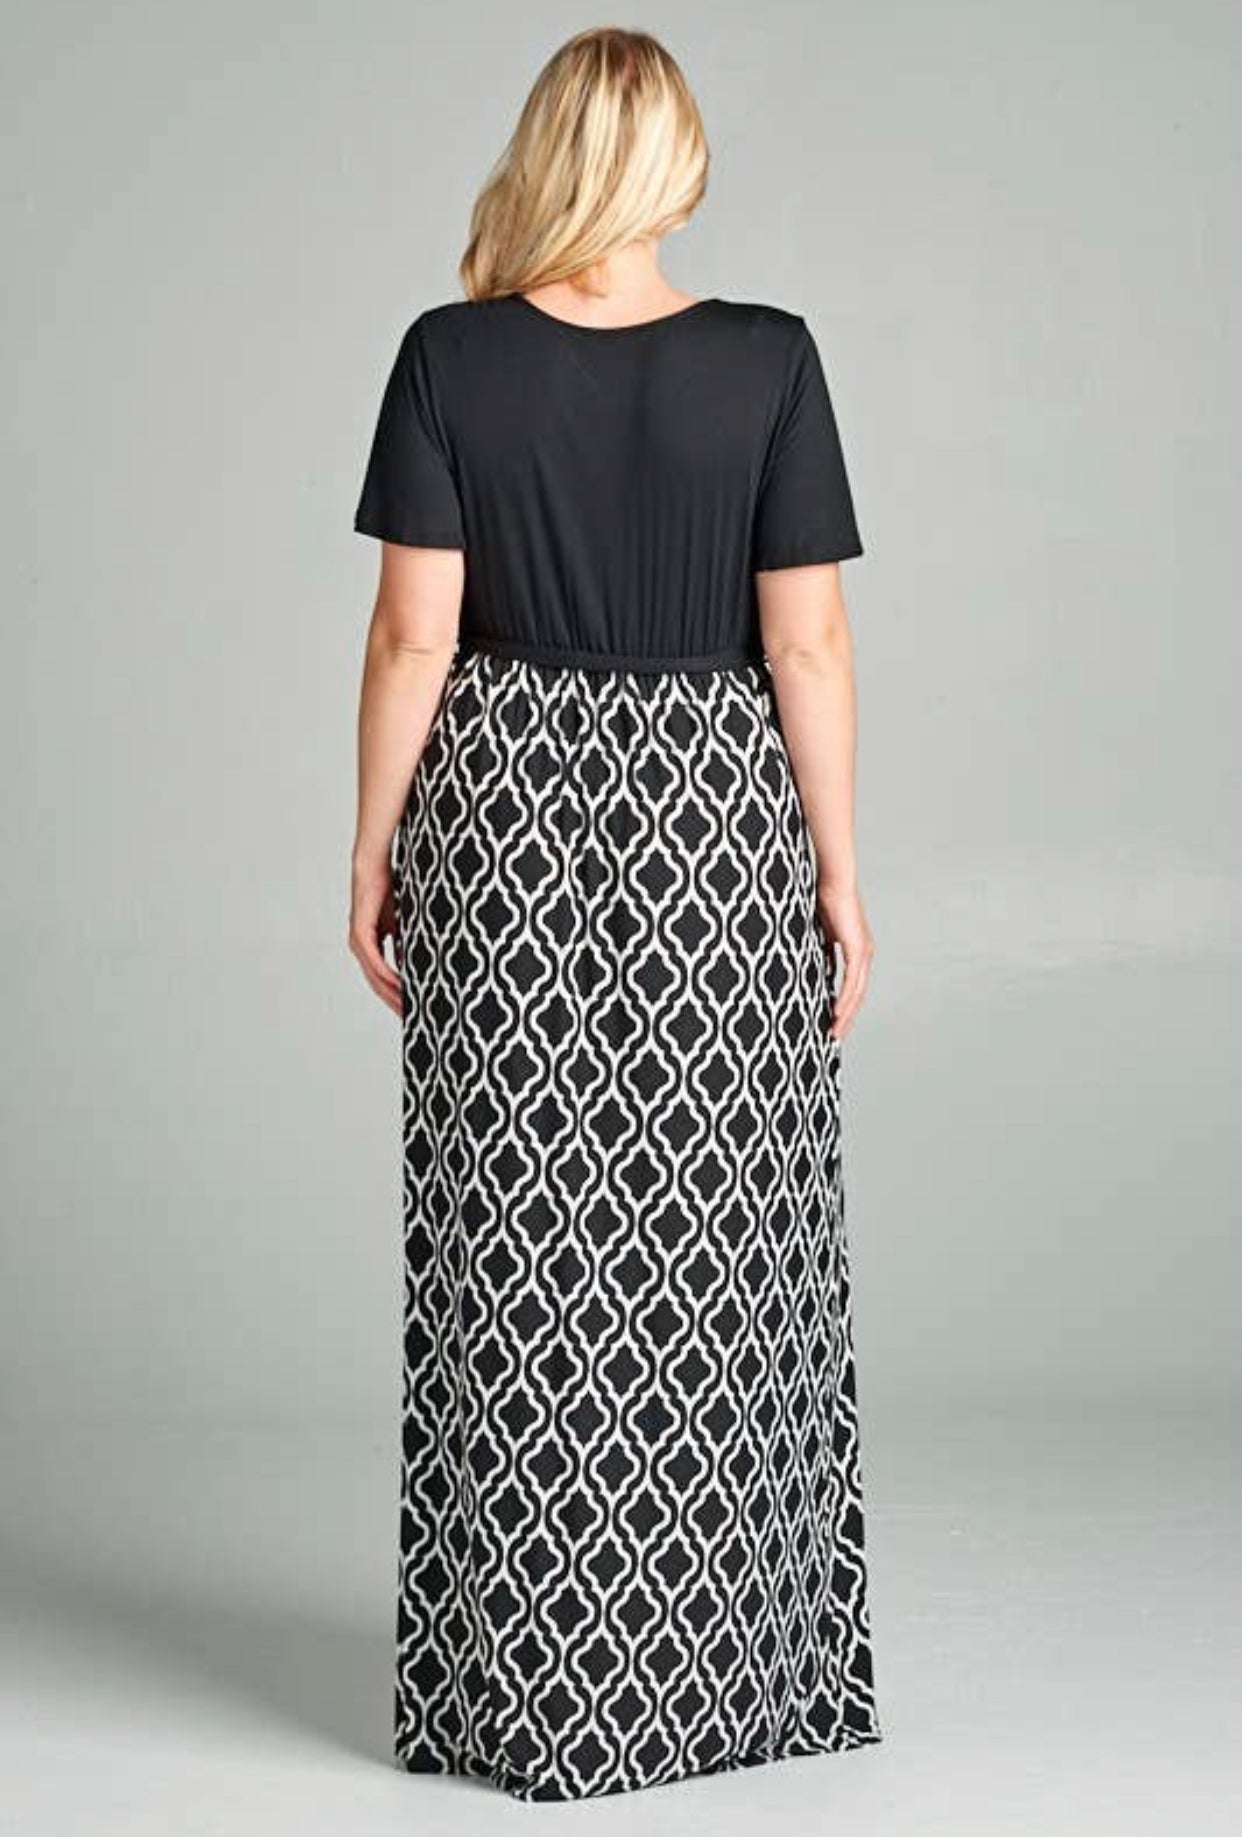 Plus Size Wrap Maxi Dress with Belt, Sizes 1XLarge - 3XLarge (US 14 - 18)